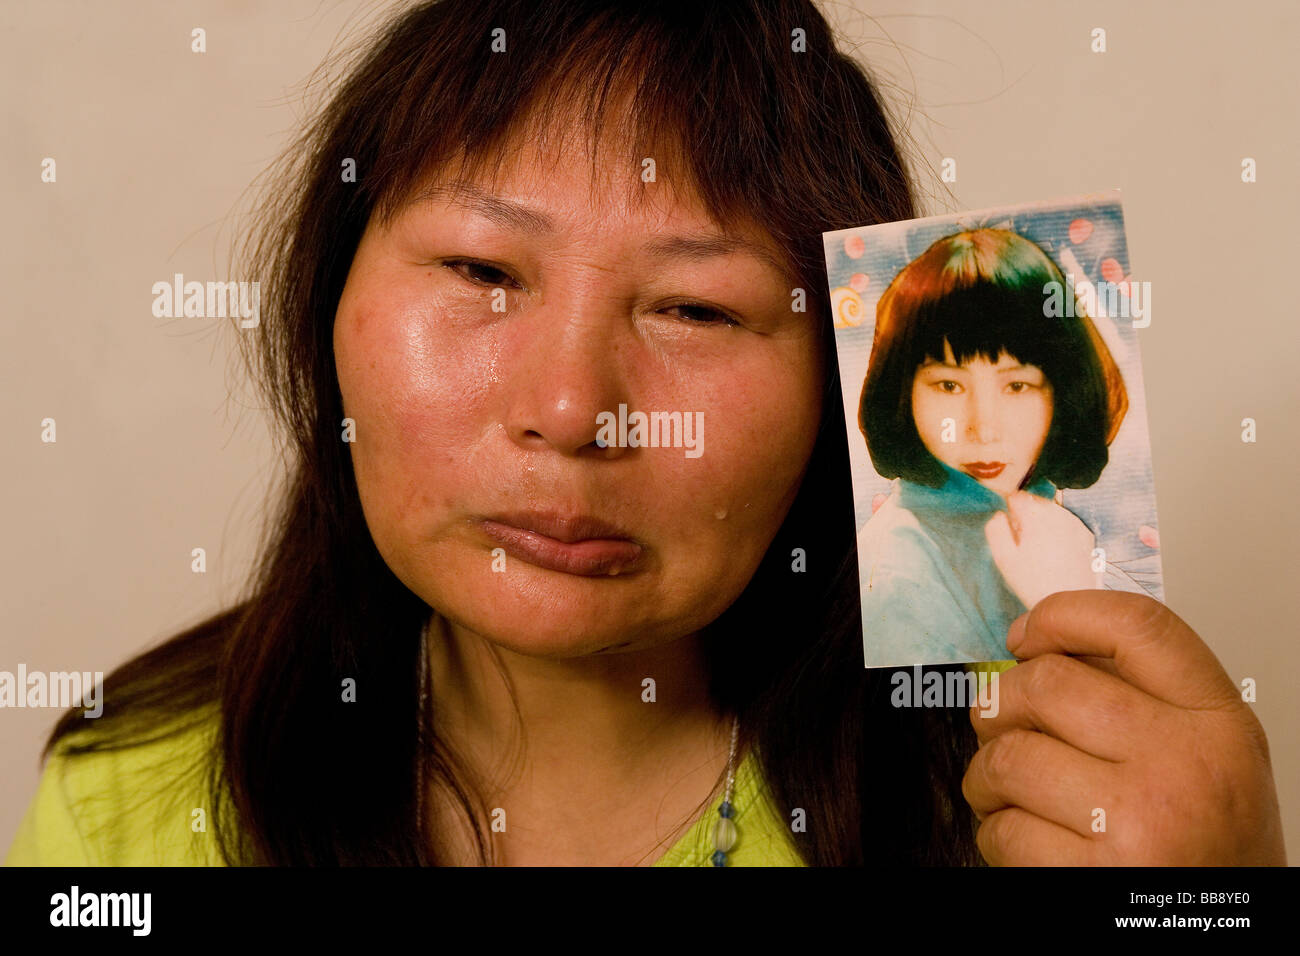 Disfigured Face Stock Photos & Disfigured Face Stock Images - Alamy